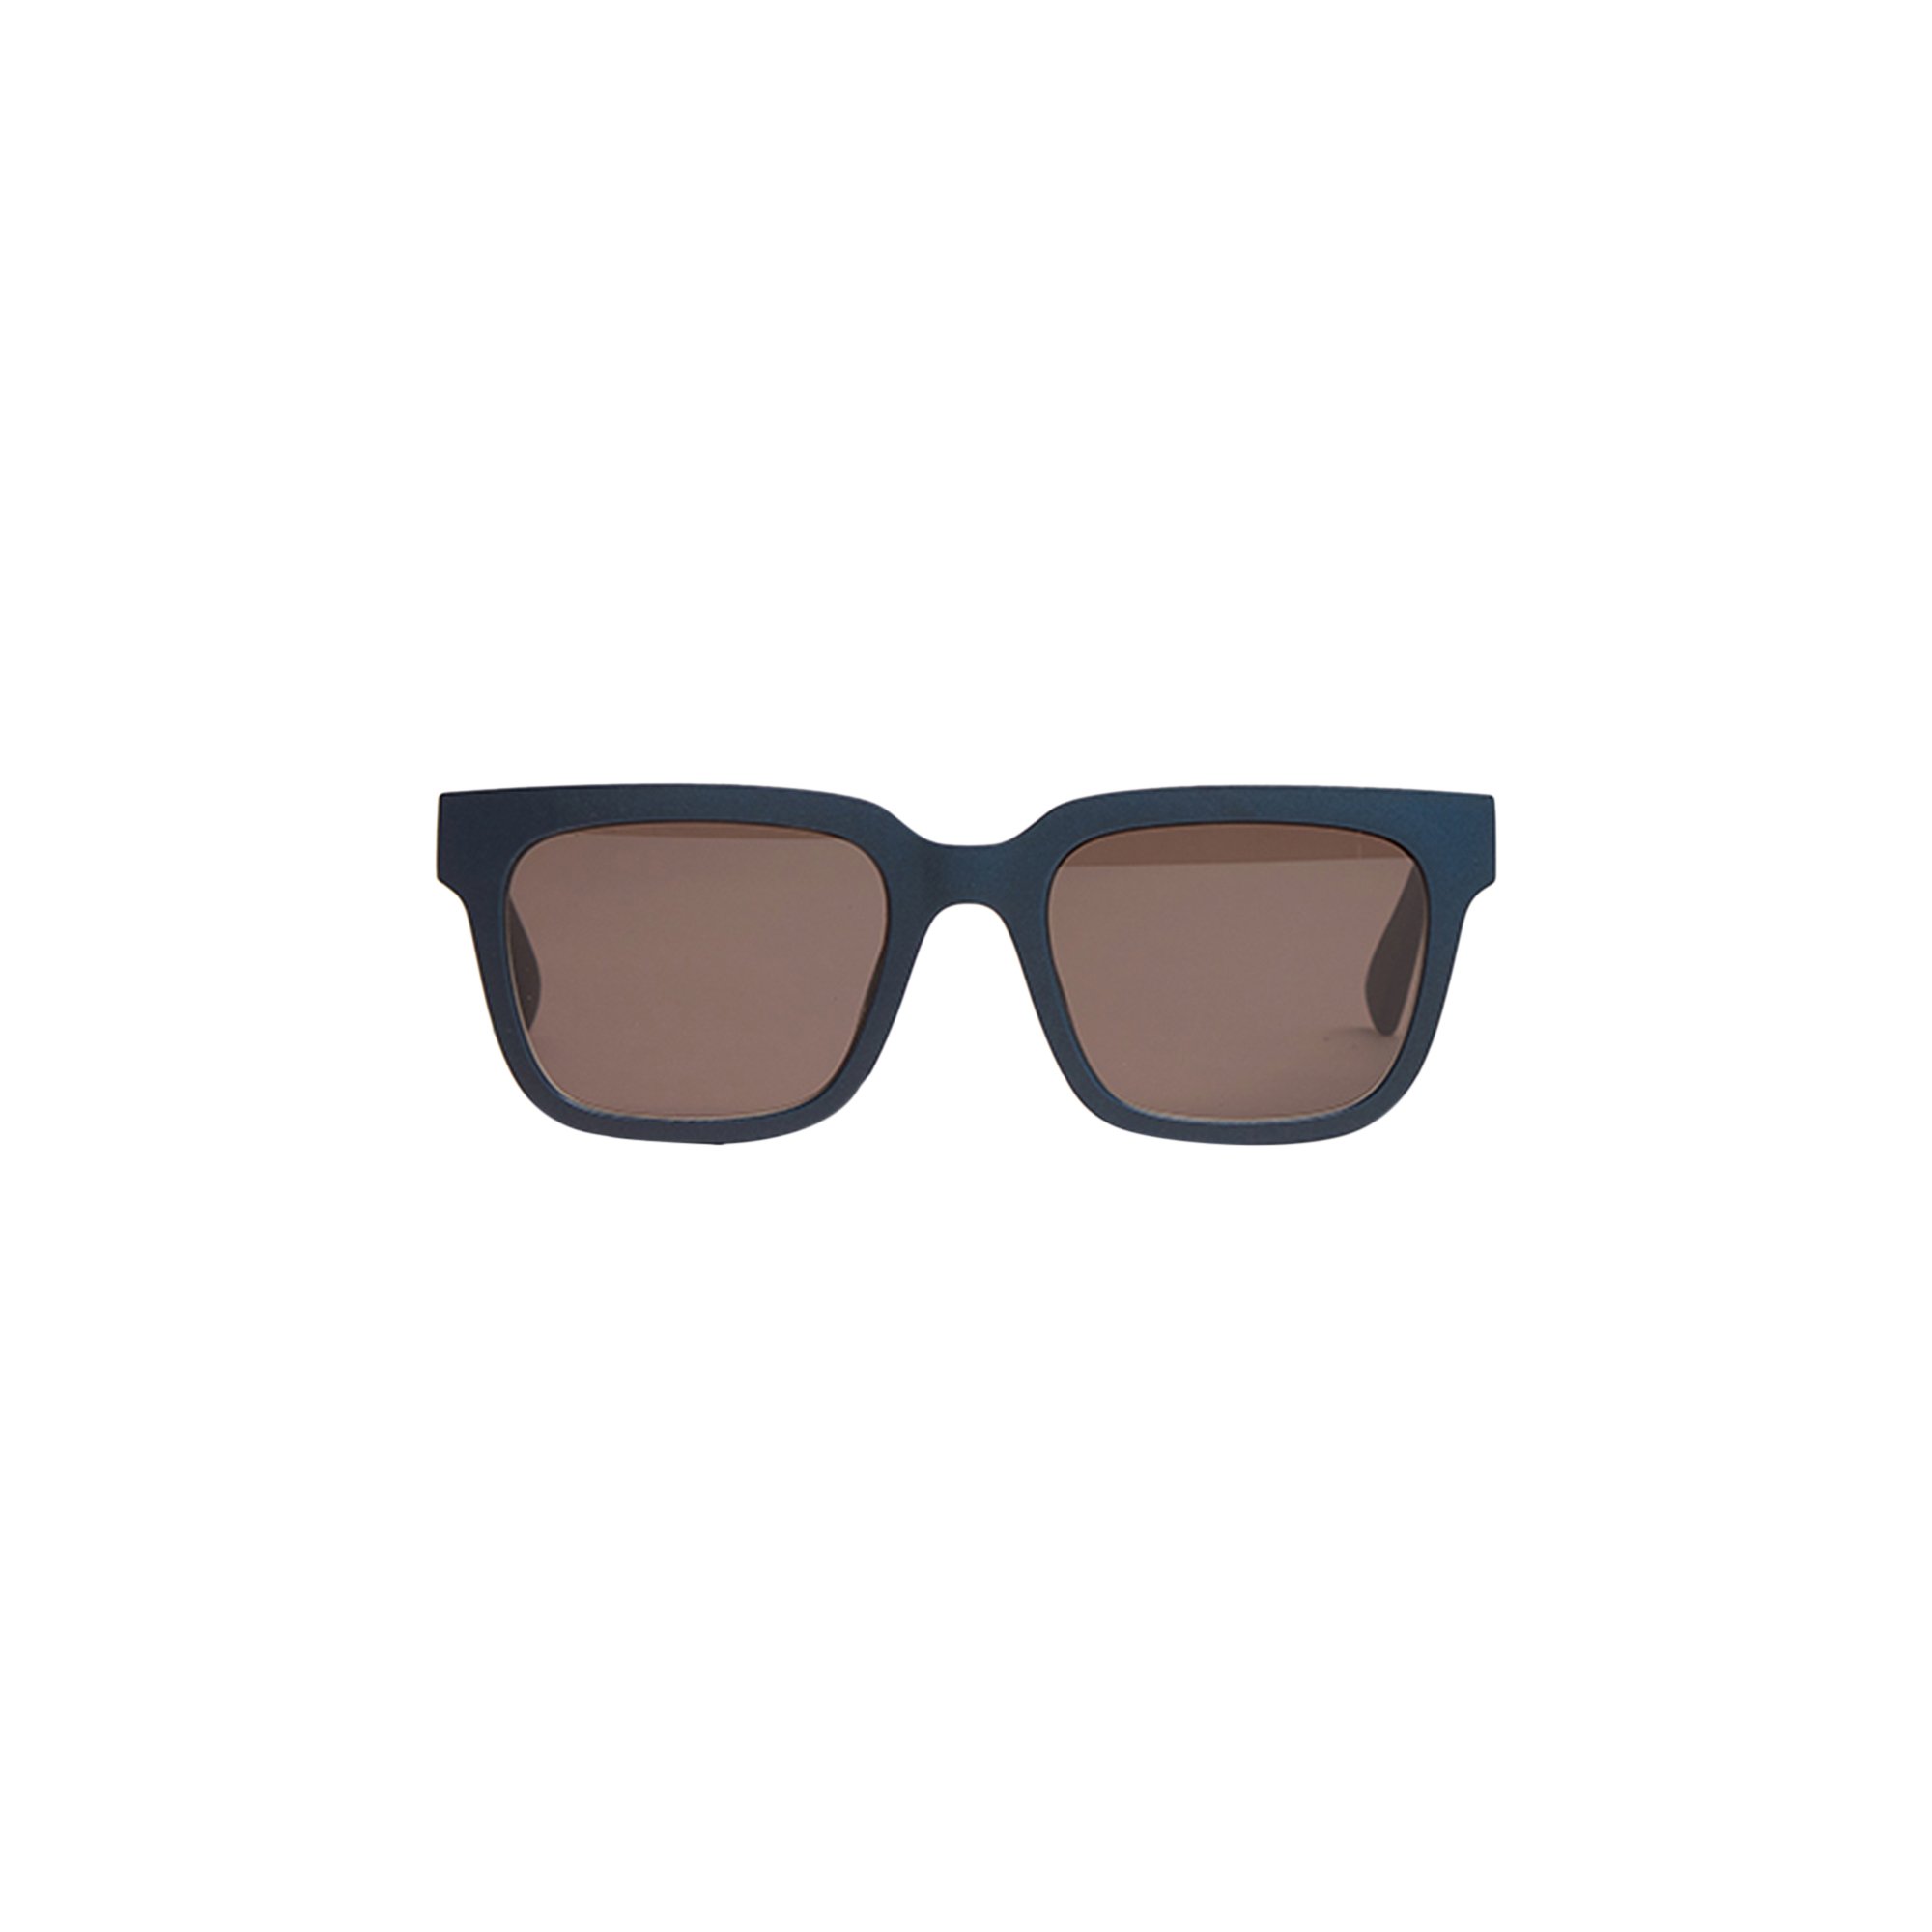 Mykita Dusk Солнцезащитные очки, Индиго/Коричневый однотонный солнцезащитные очки mykita коричневый